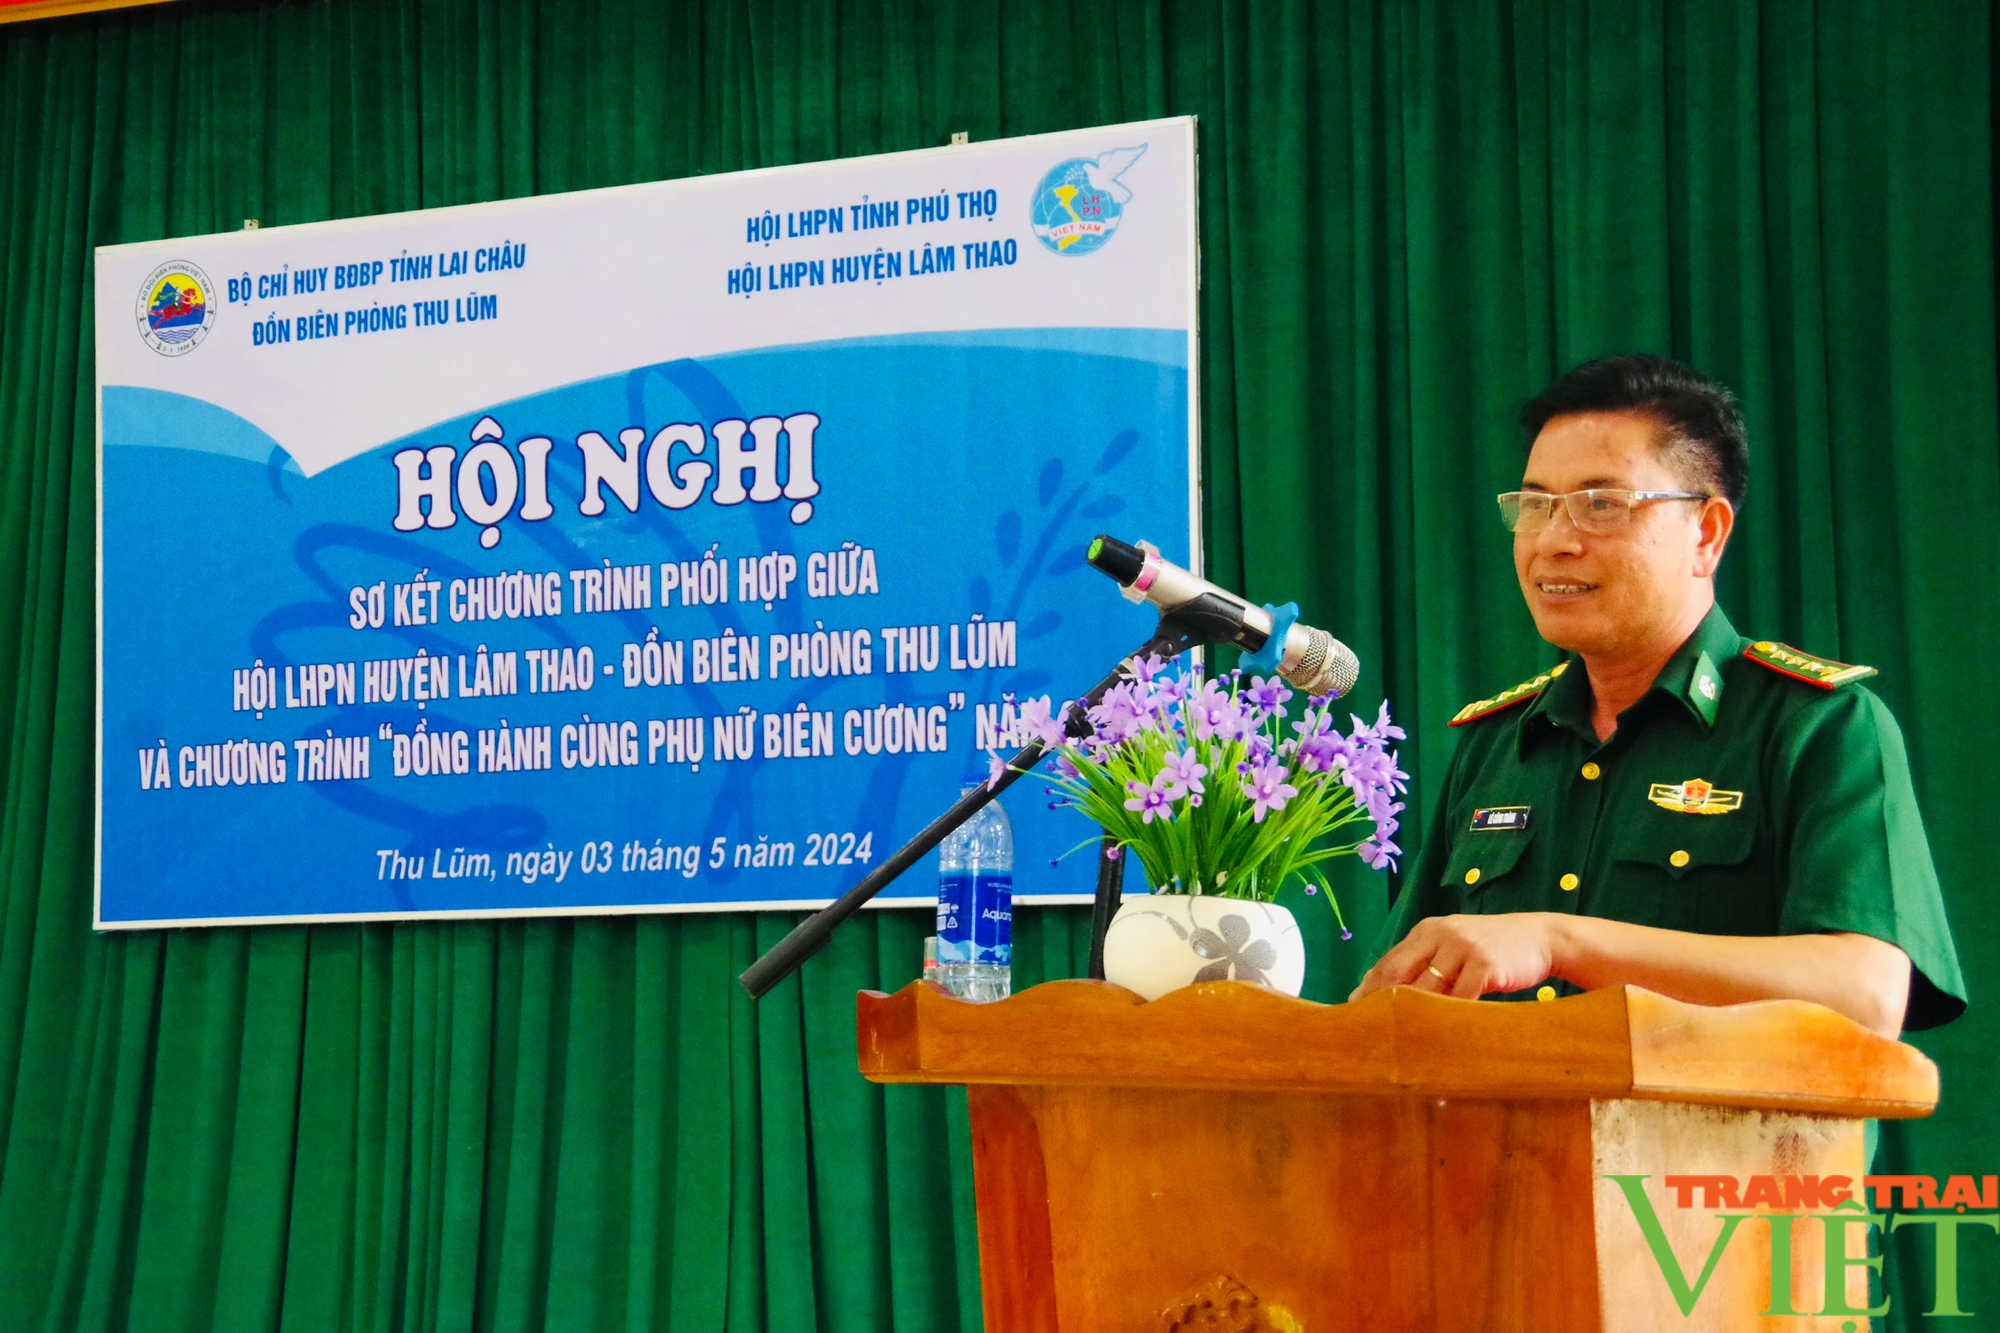 Lai Châu: Sơ kết chương trình phối hợp giữa Đồn Biên phòng Thu Lũm và Hội LHPN huyện Lâm Thao, Phú Thọ- Ảnh 2.